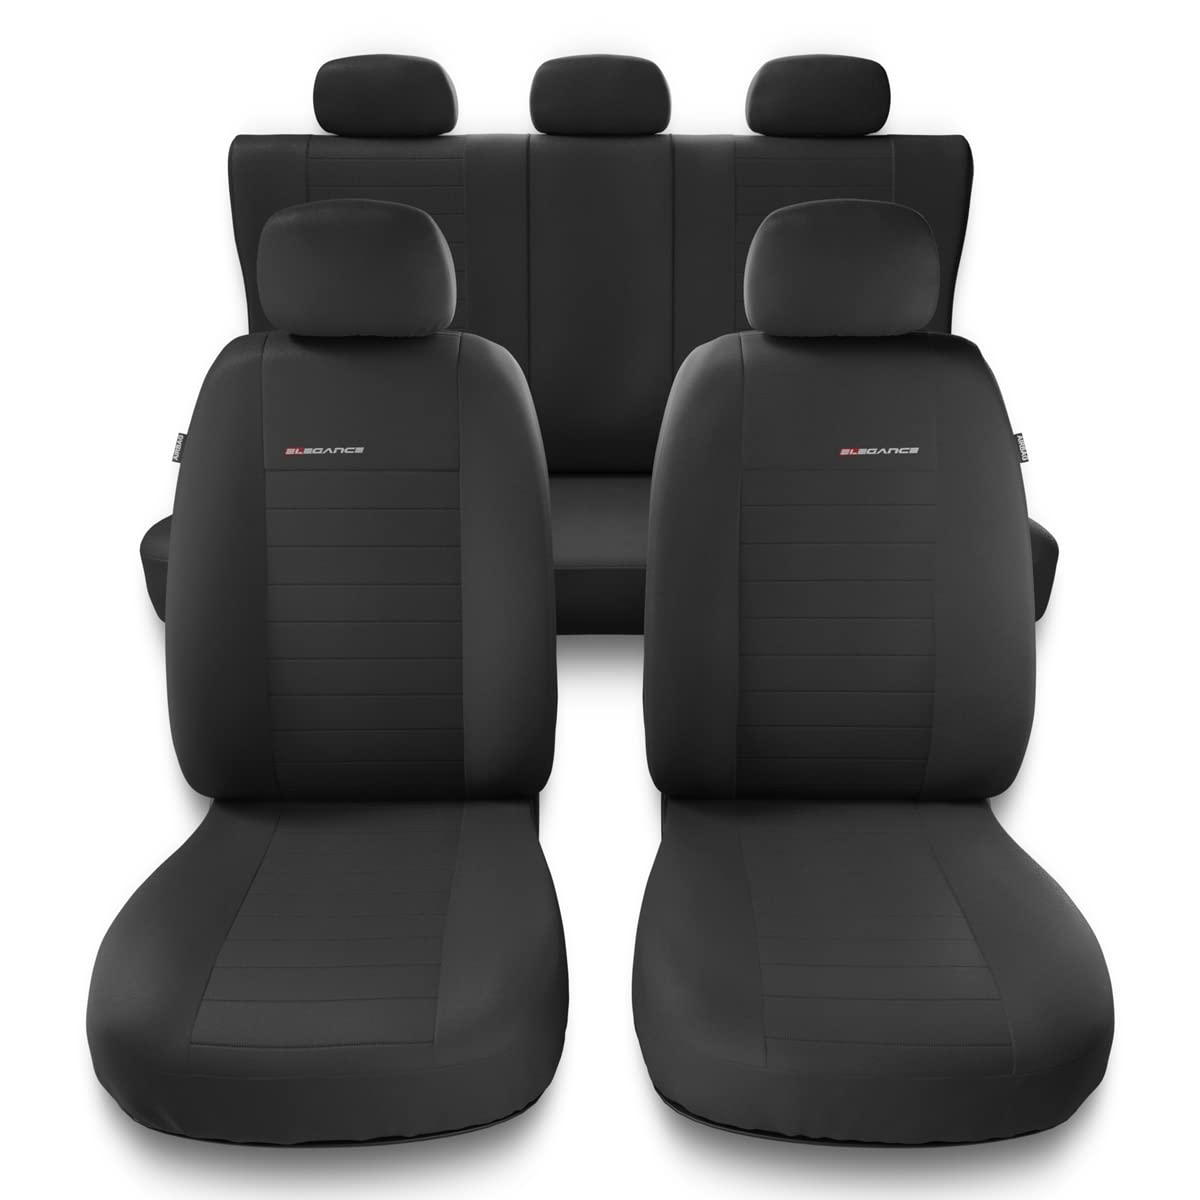 Mossa - Universal Sitzbezüge Auto kompatibel mit Mazda 6 I, II, III (2002-2019) - Autositzbezüge Schonbezüge für Autositze - UNE-4 von Mossa